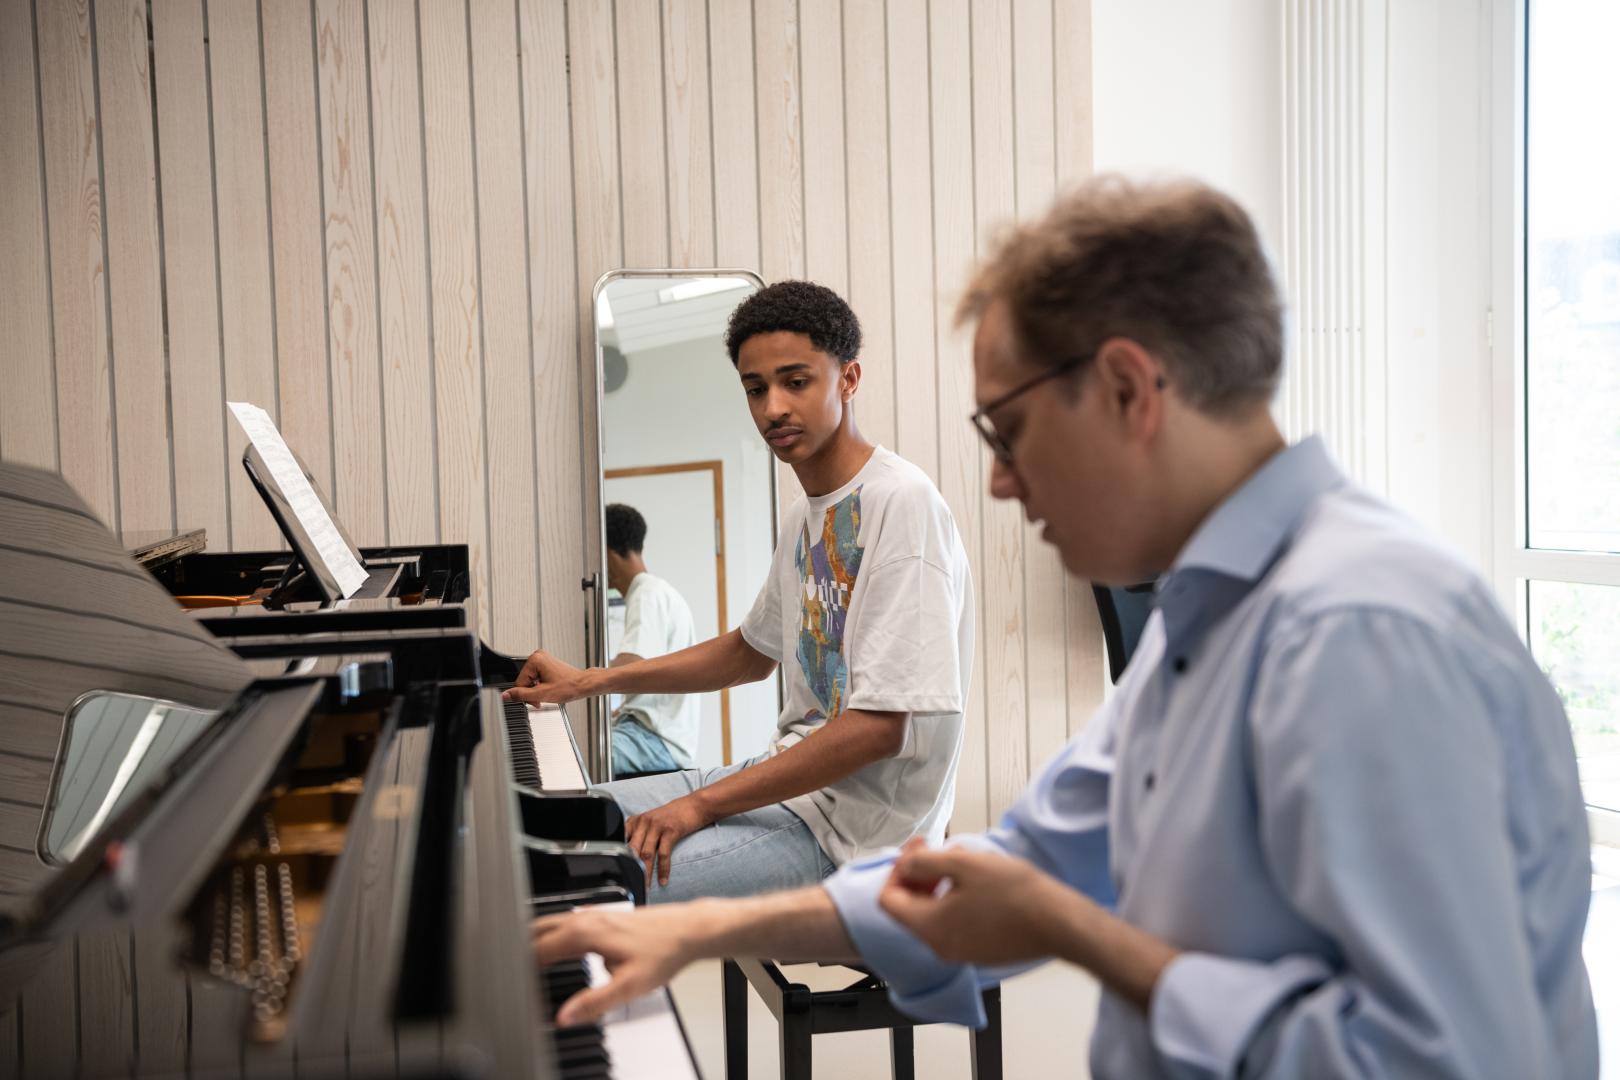 Ein Student der Young Academy im Klavier-Einzelunterricht. Er blickt auf die Hände seines Professors, der am zweiten Flügel sitzt und etwas erklärt.